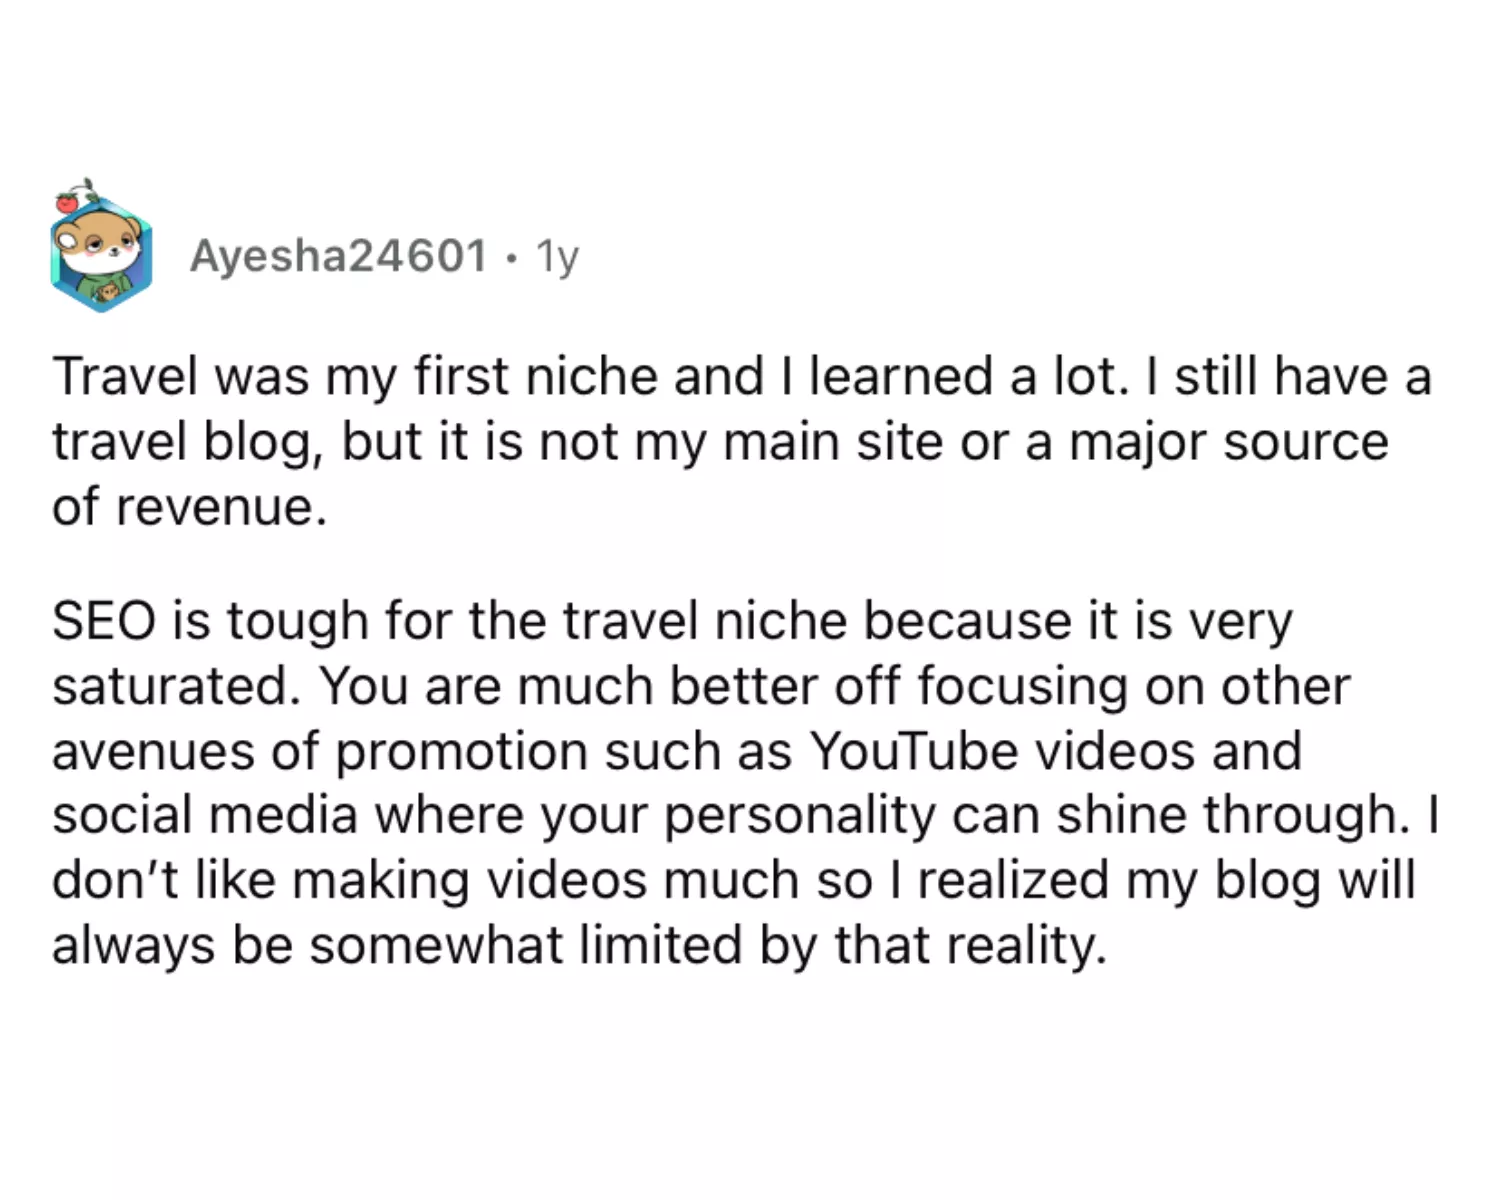 A Reddit comment on travel blogging.